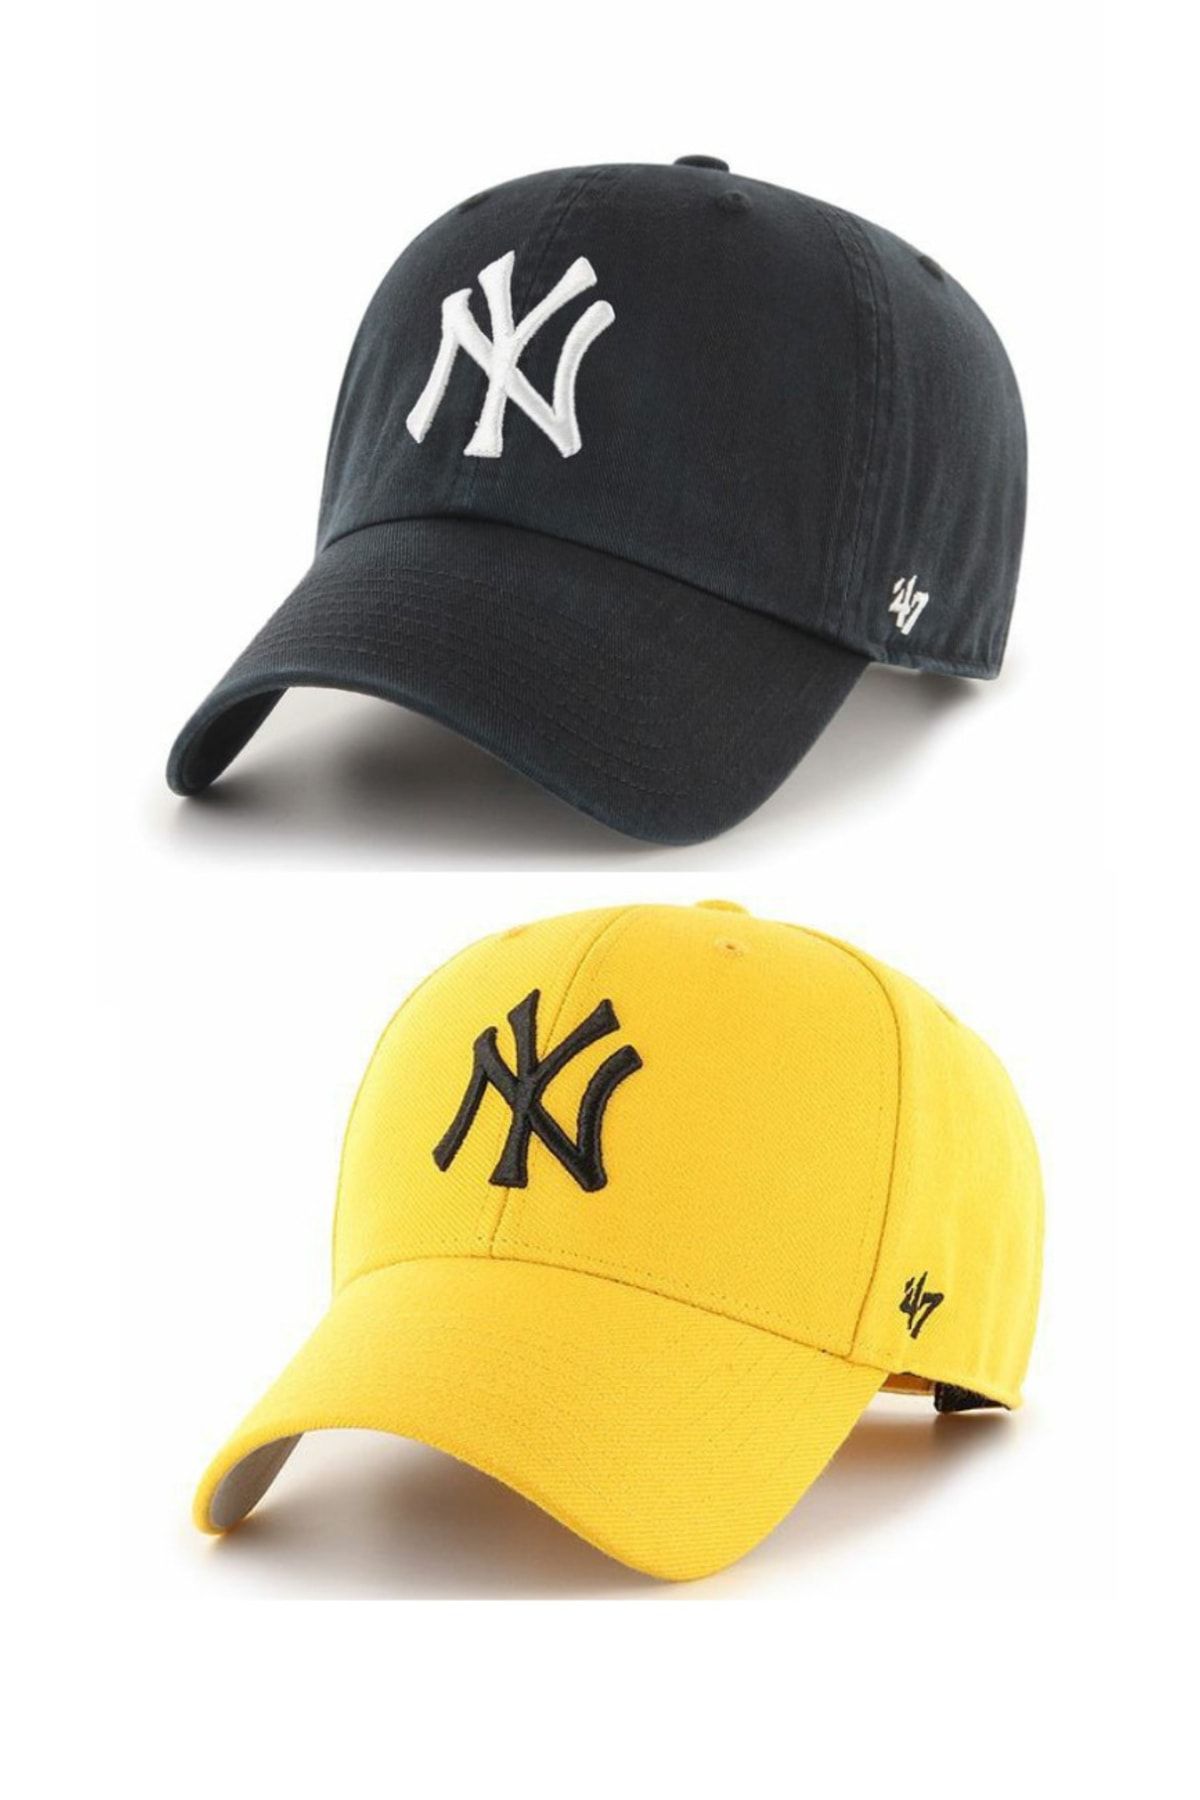 GYES Sports Nylon Hat Unisex Set of 2 Adjustable with Velcro on